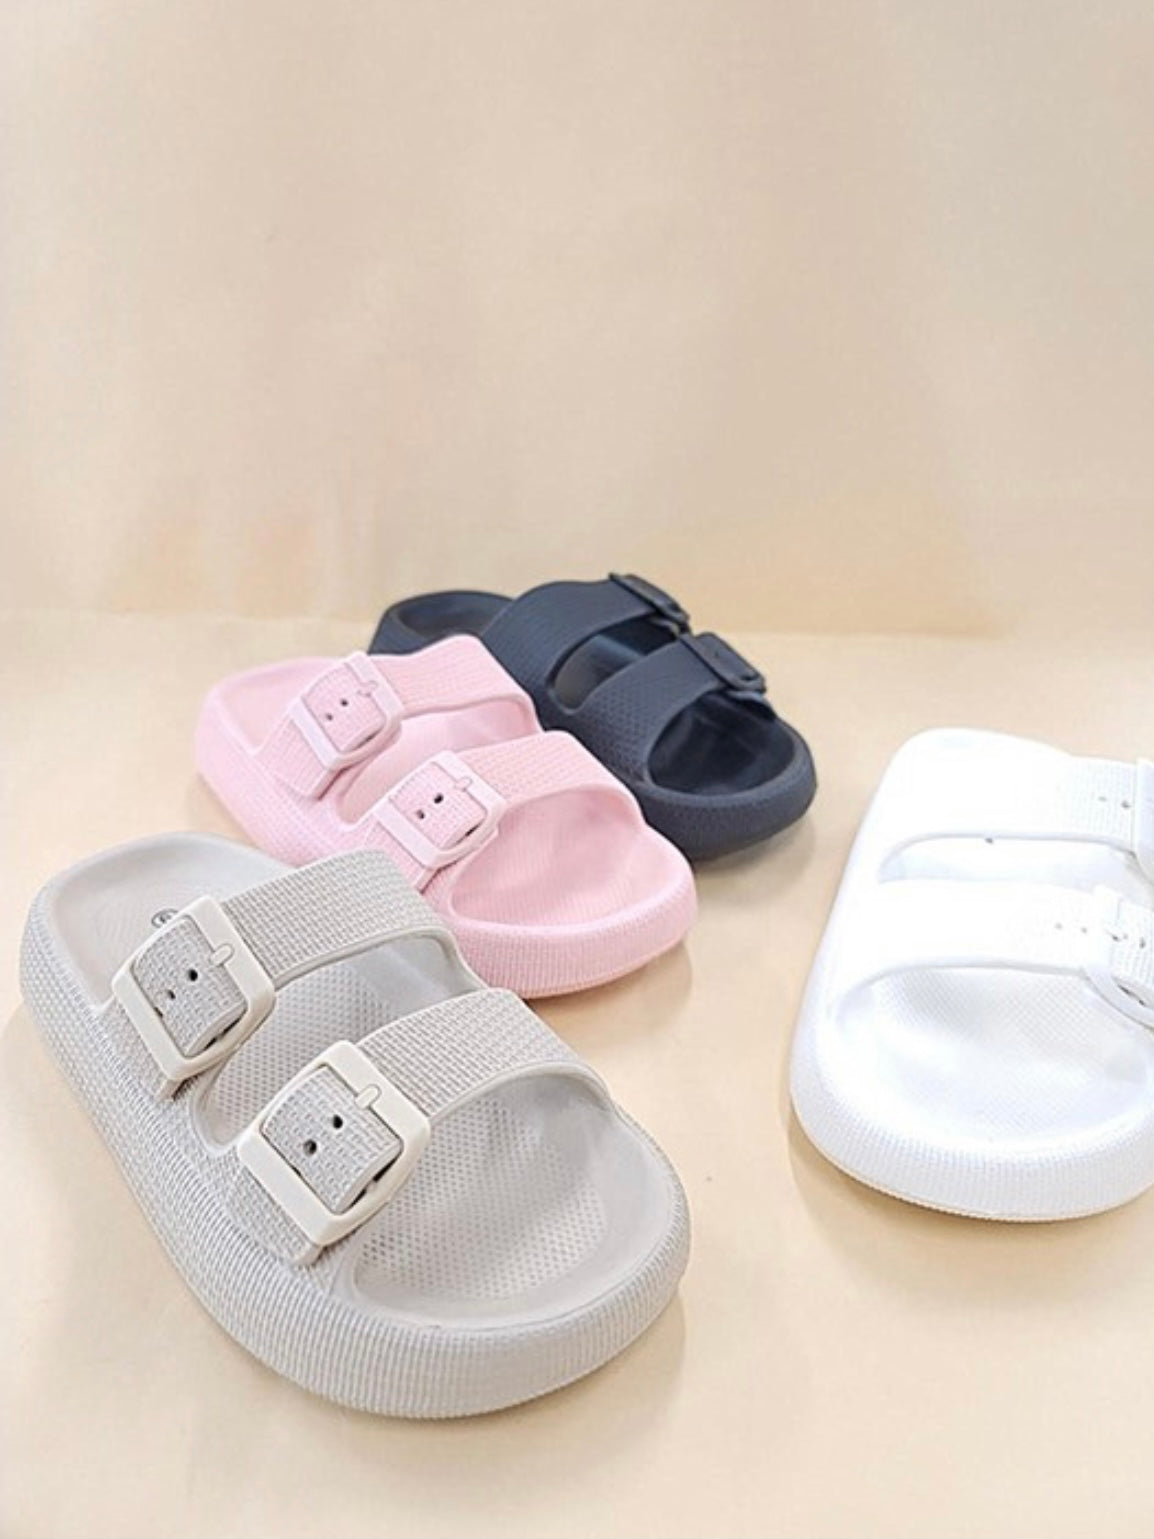 White 2 straps slides foam plastic sandals -